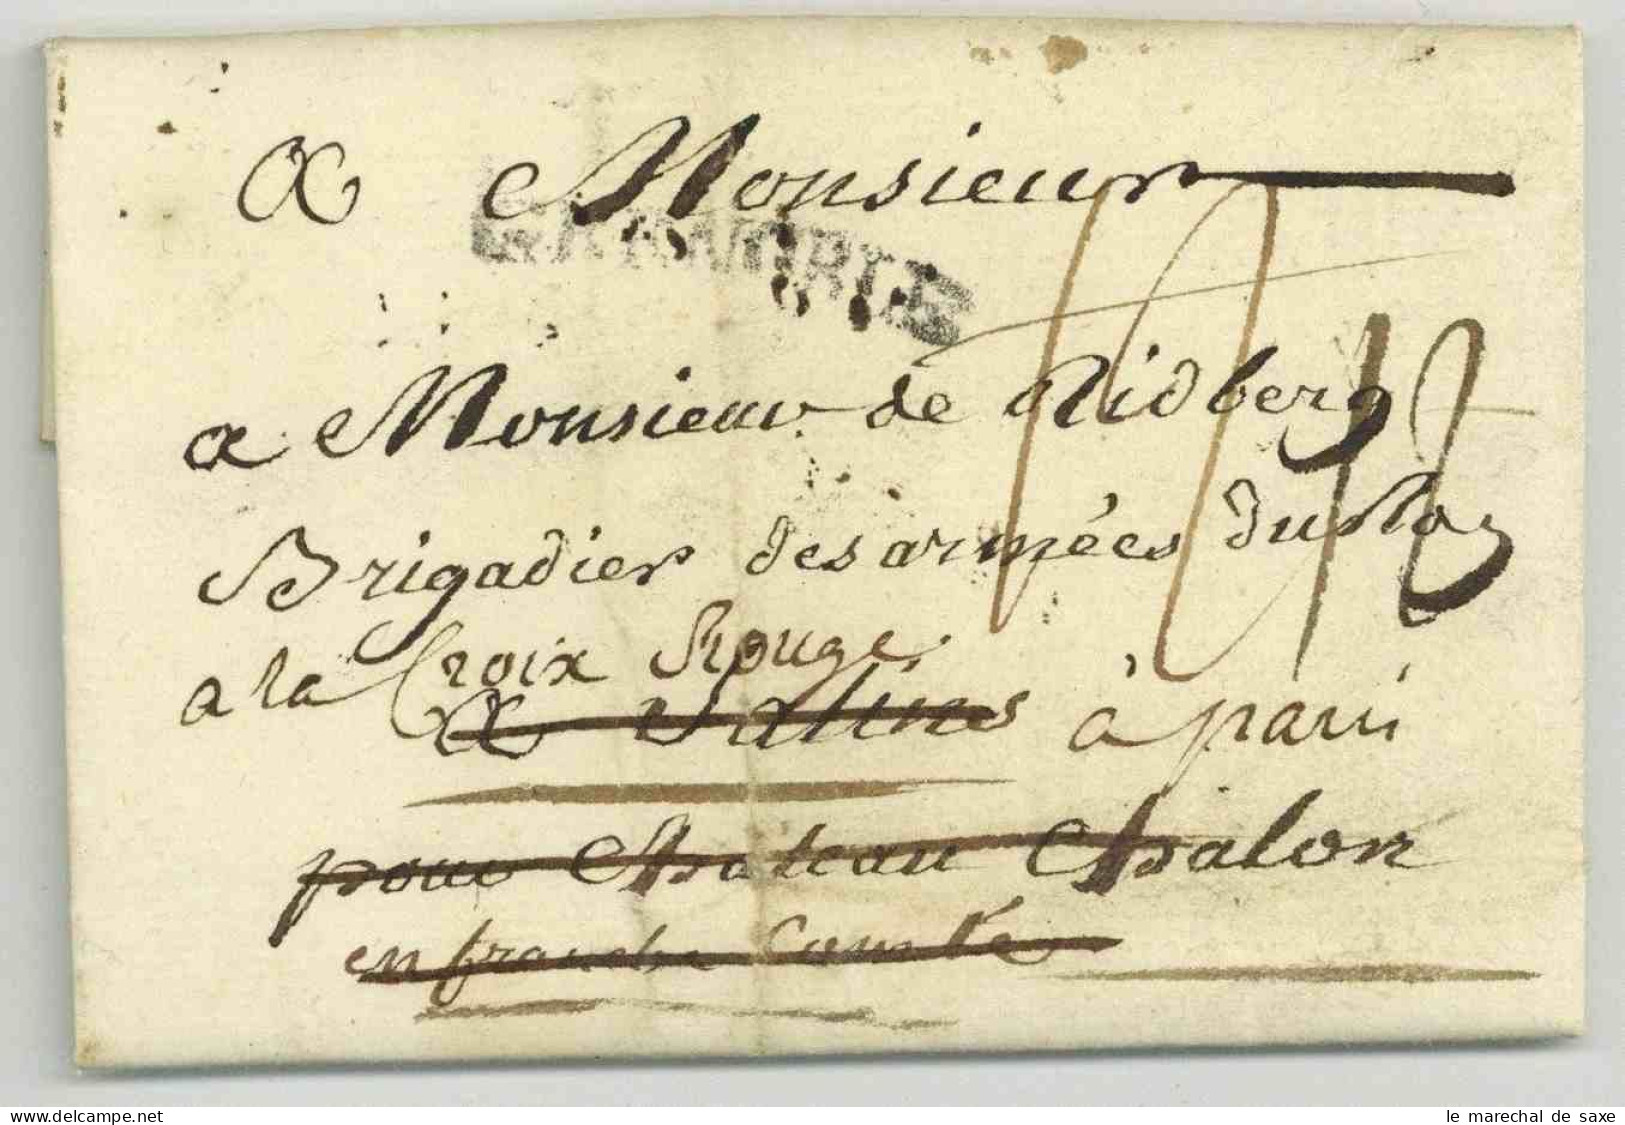 Pierre Joseph De Bourcet (1700-1780) Ingenieur Cartographe Lieutenant General Autographe Grenoble 1779 Deboursé Salins - Personnages Historiques